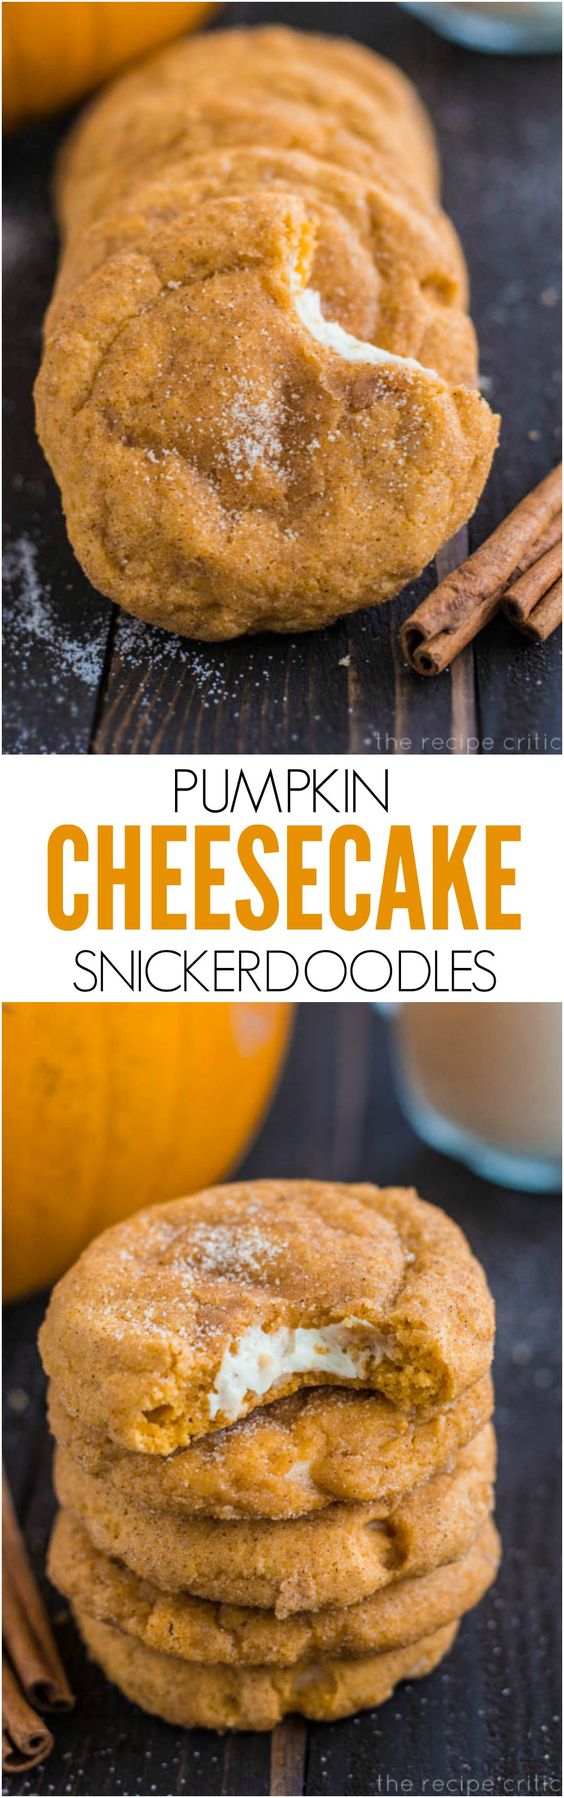 Thanksgiving Desserts: Pumpkin Cheesecake Snickerdoodles